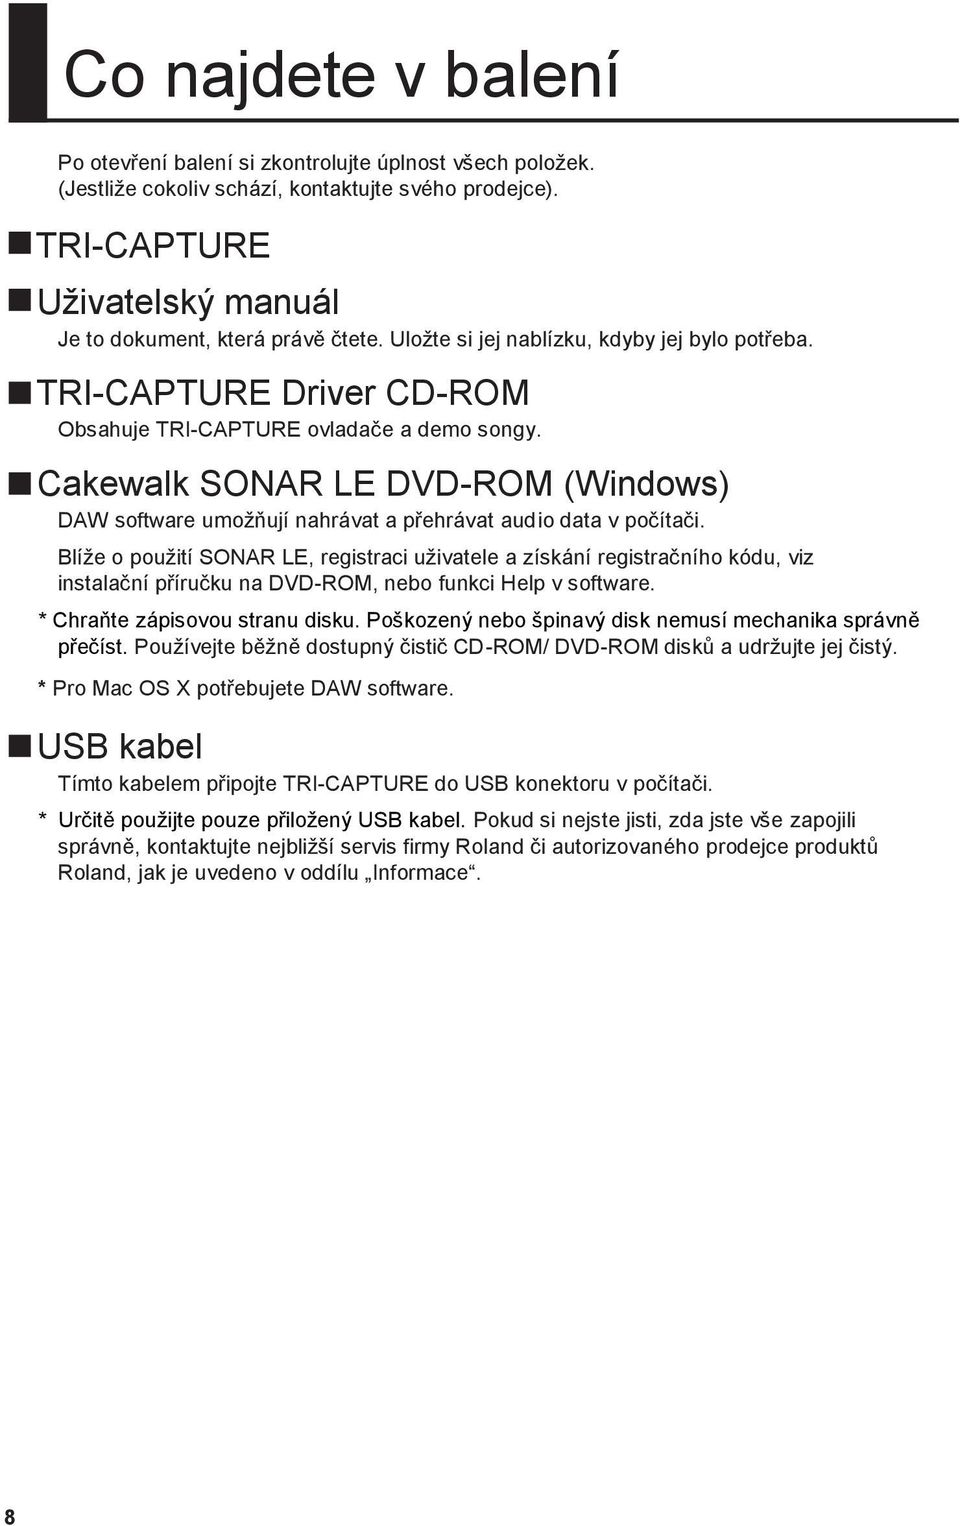 Cakewalk SONAR LE DVD-ROM (Windows) DAW software umoţňují nahrávat a přehrávat audio data v počítači.